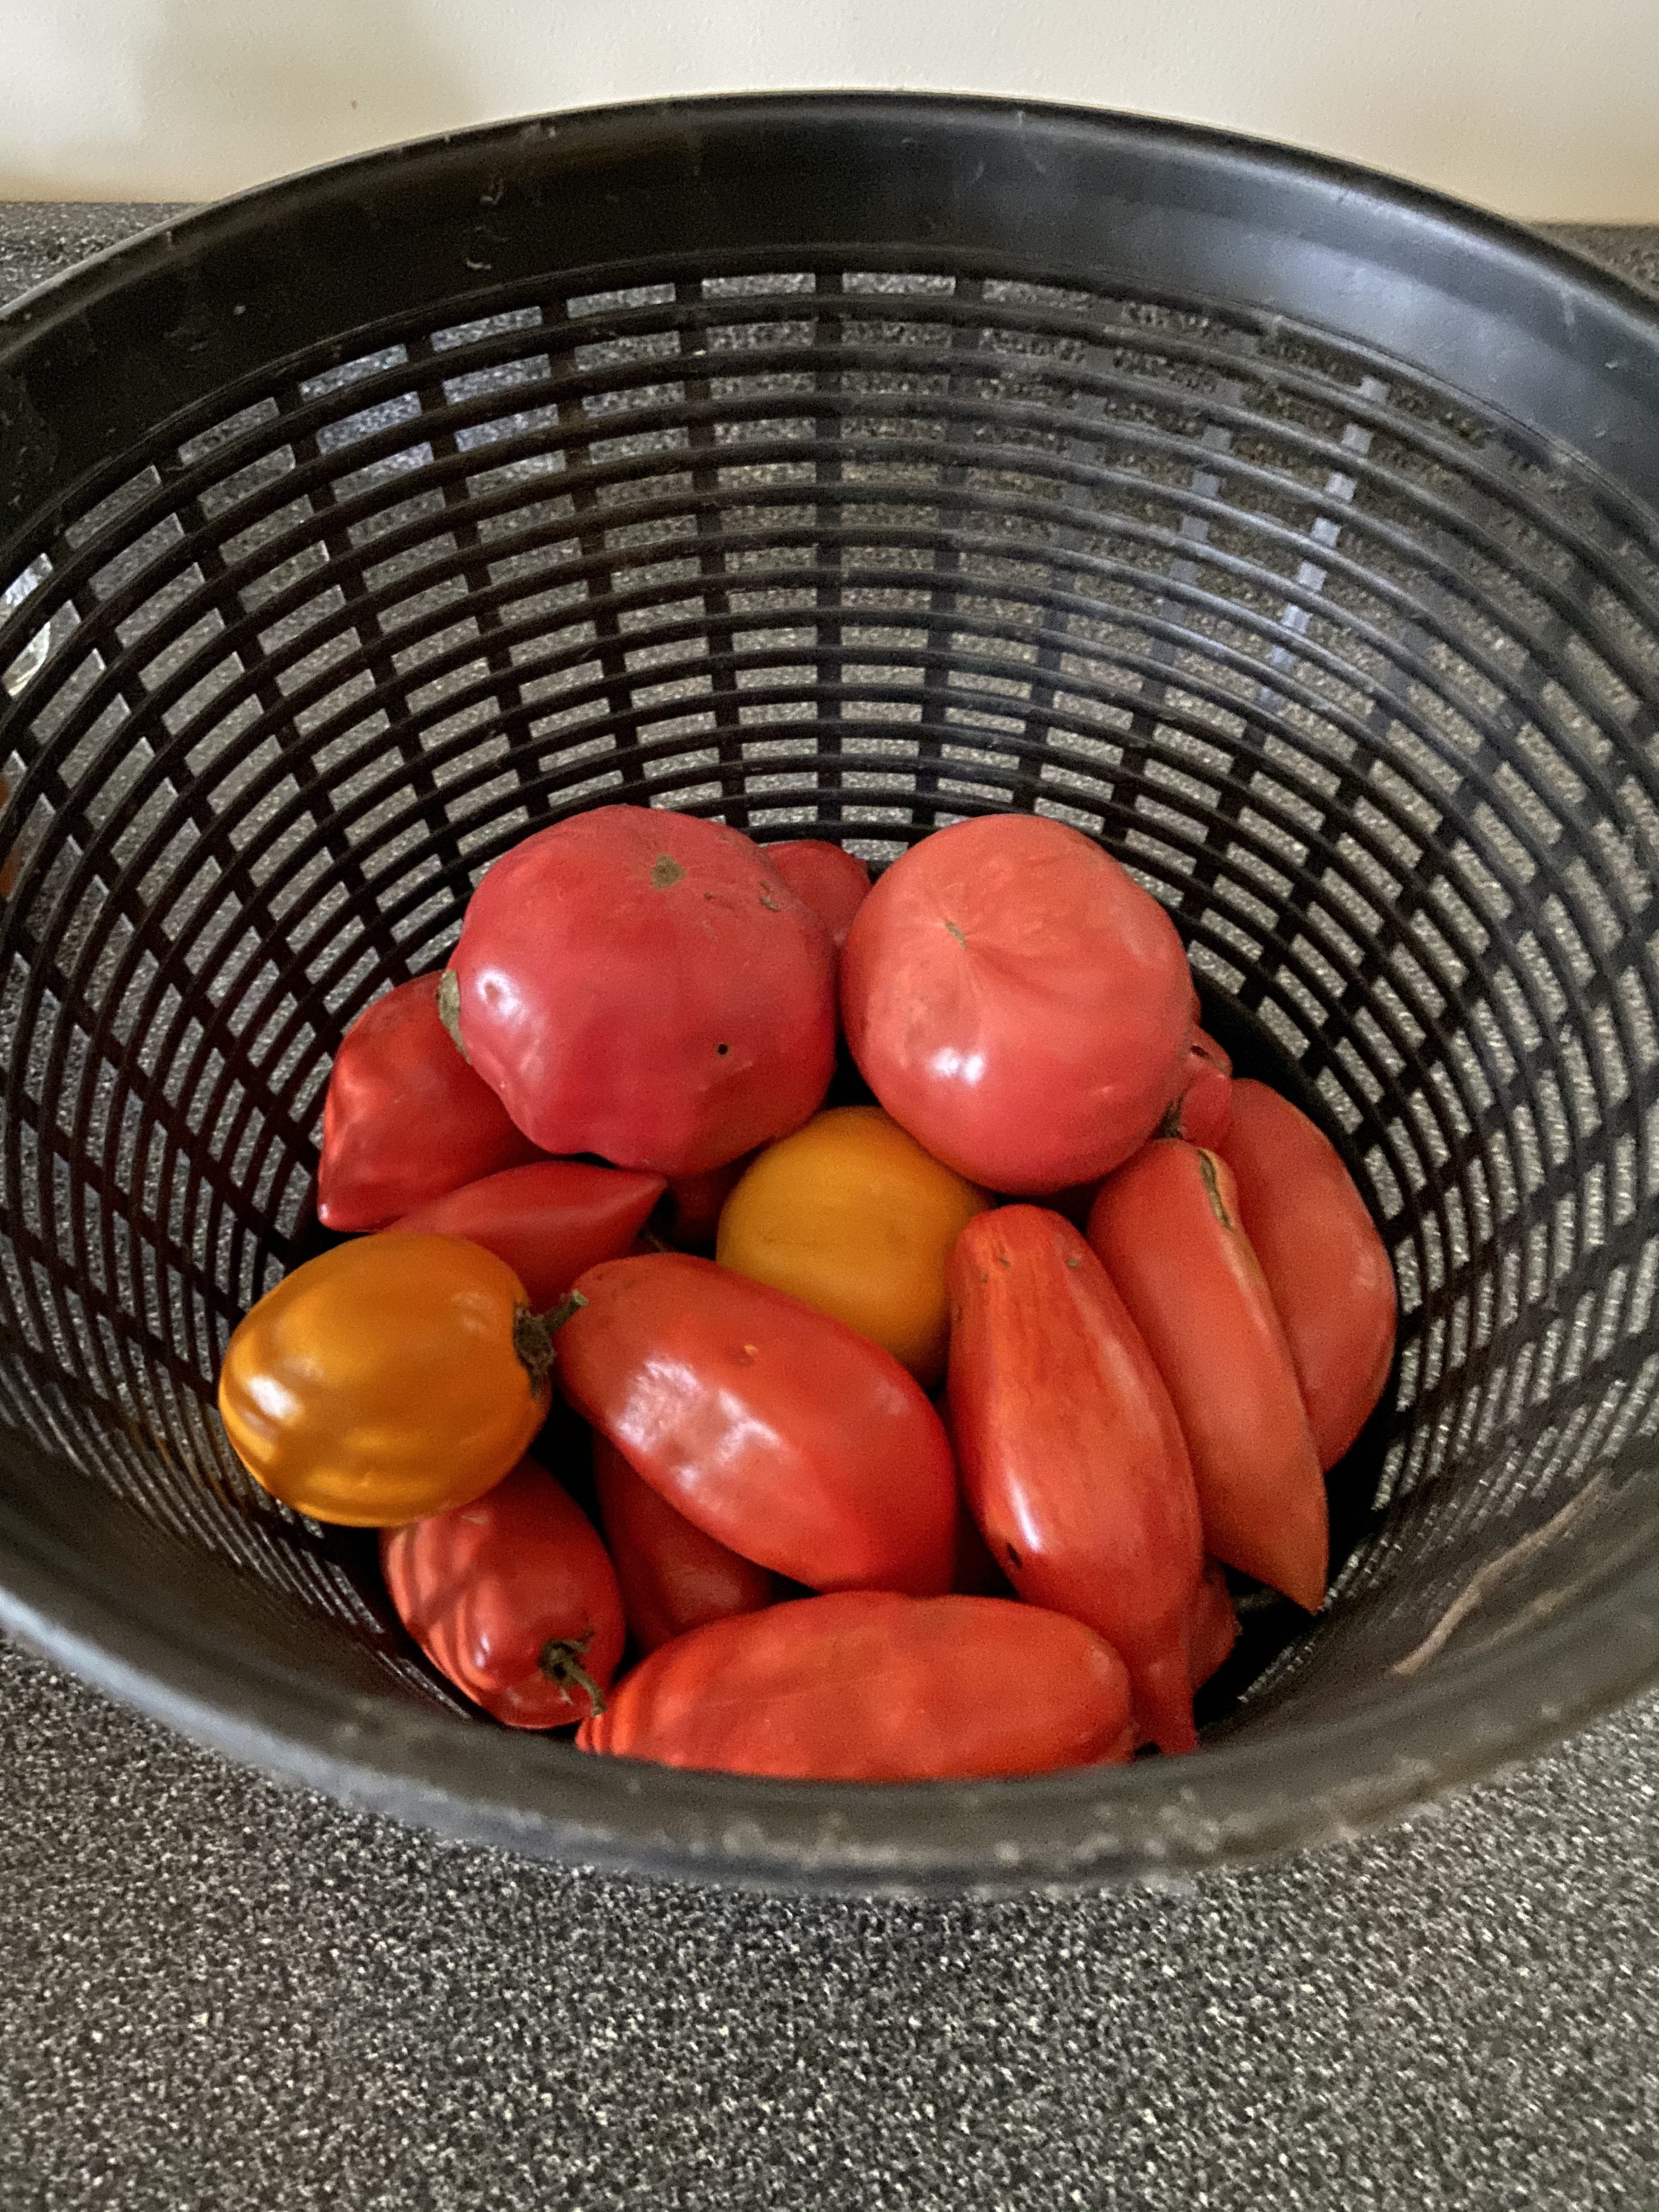 Tomatoes in November?